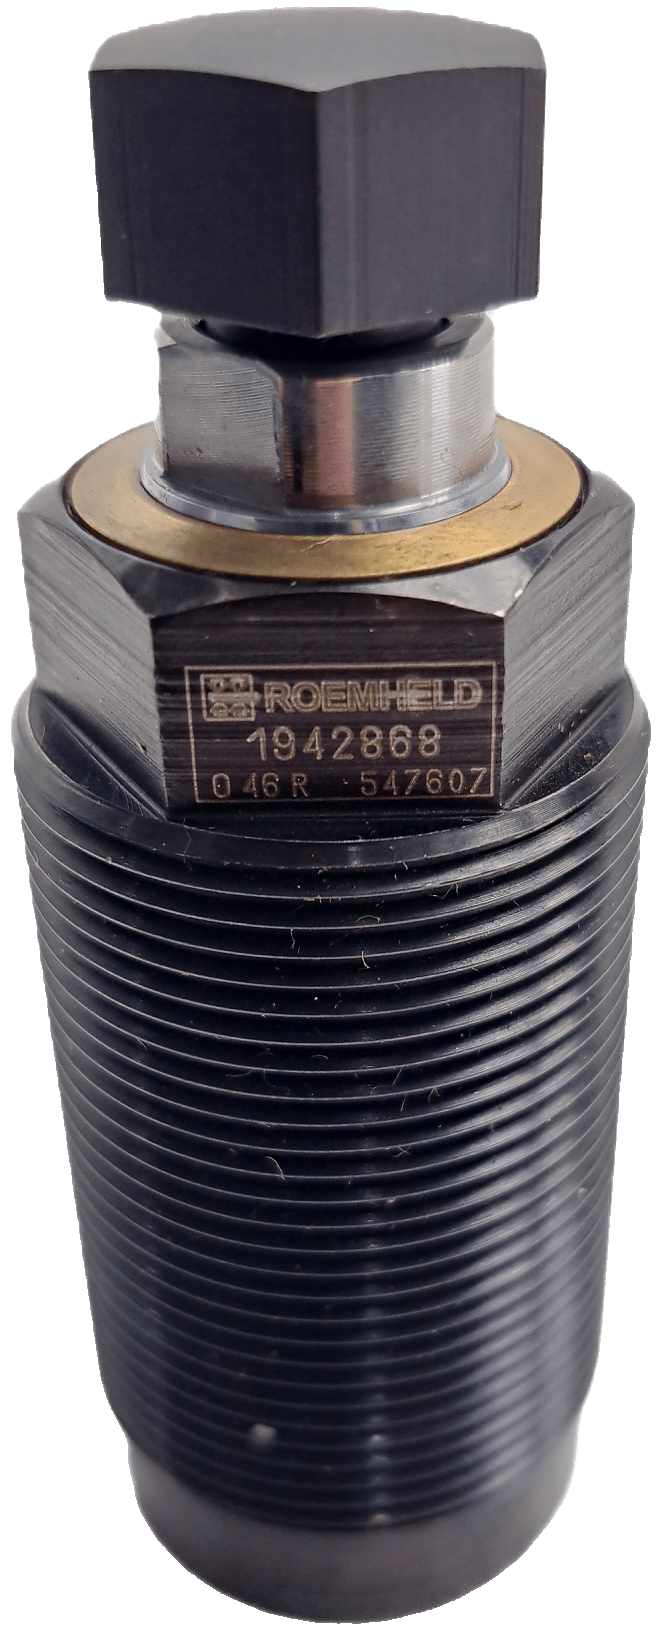 Roemheld 1942868 Einschraub-Abstützelement M30 x 1,5 mm - #product_category# | Klenk Maschinenhandel